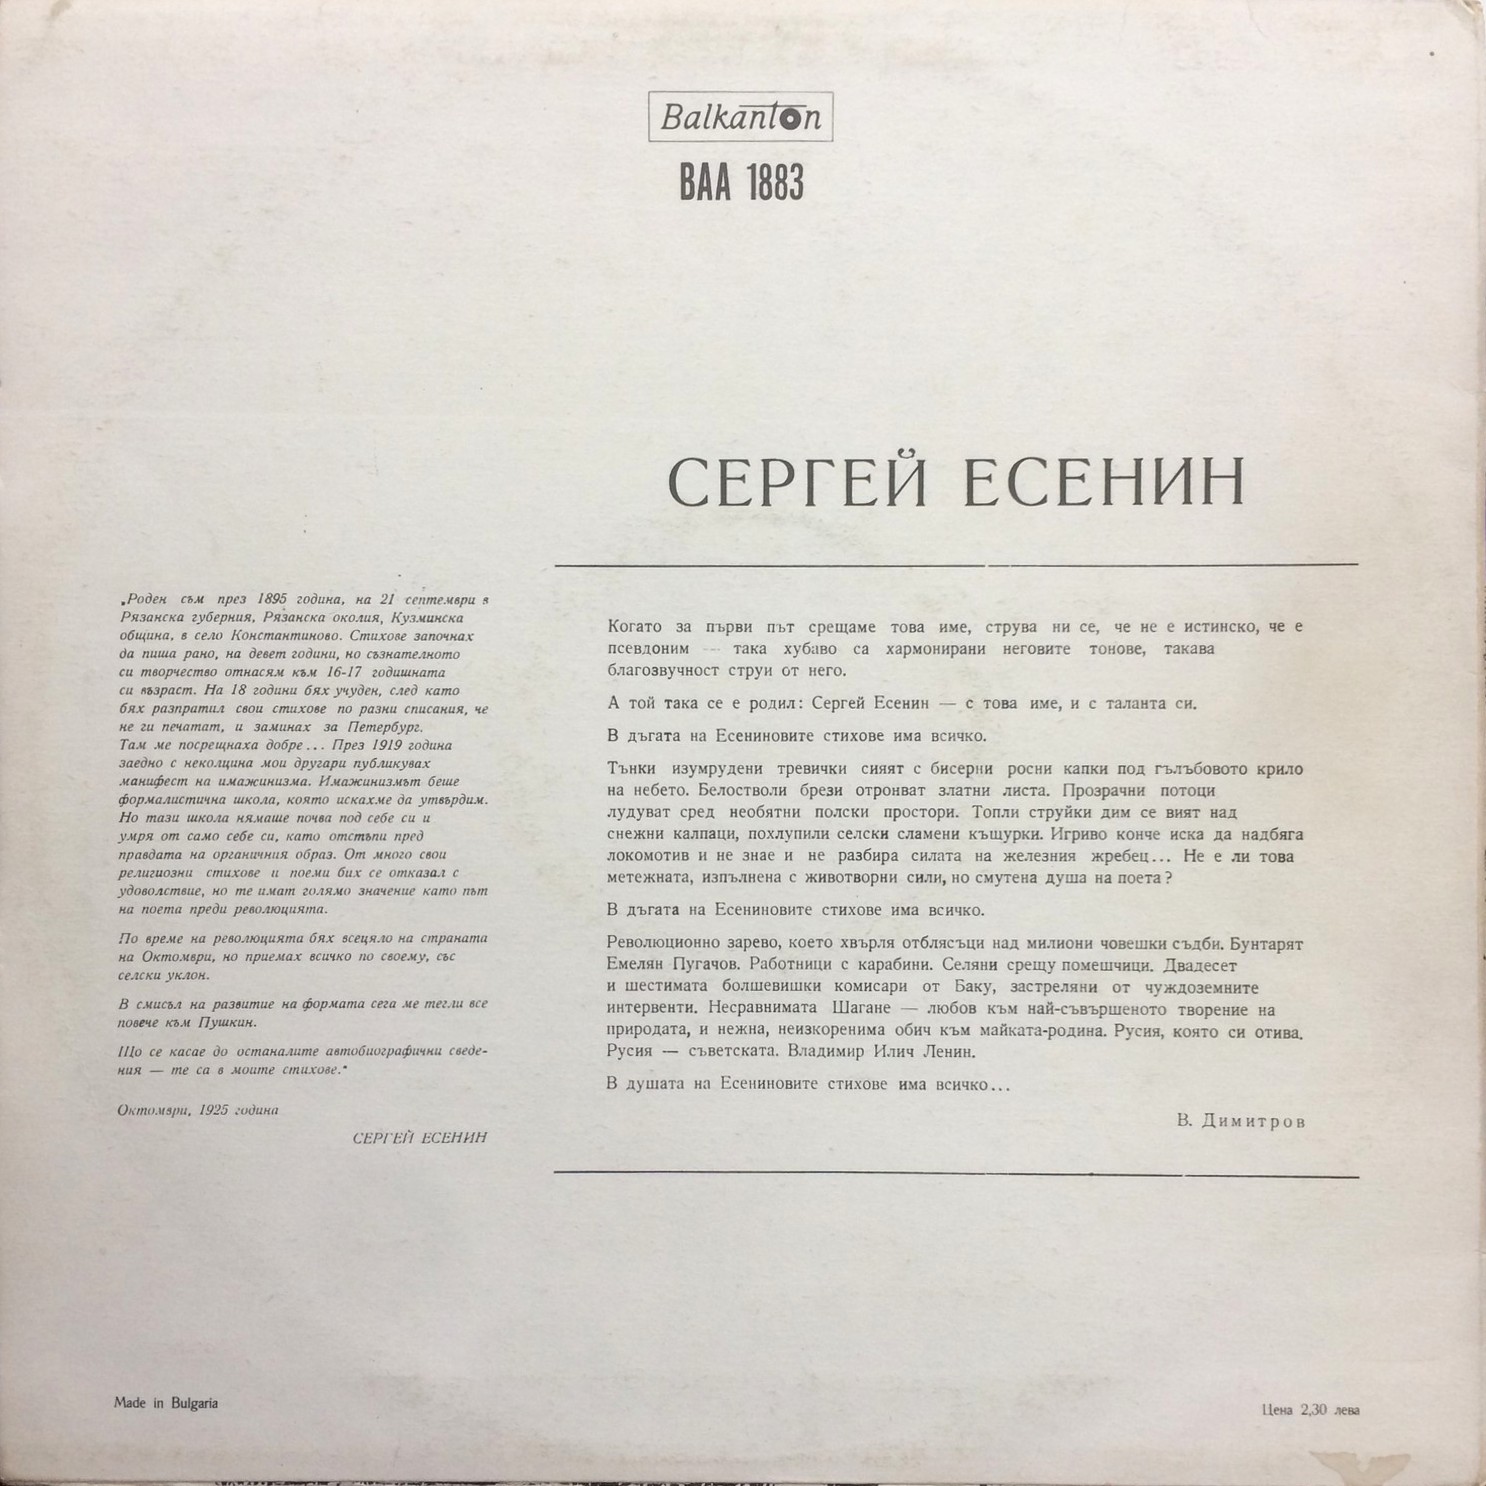 Сергей Есенин - композиция по негови стихове